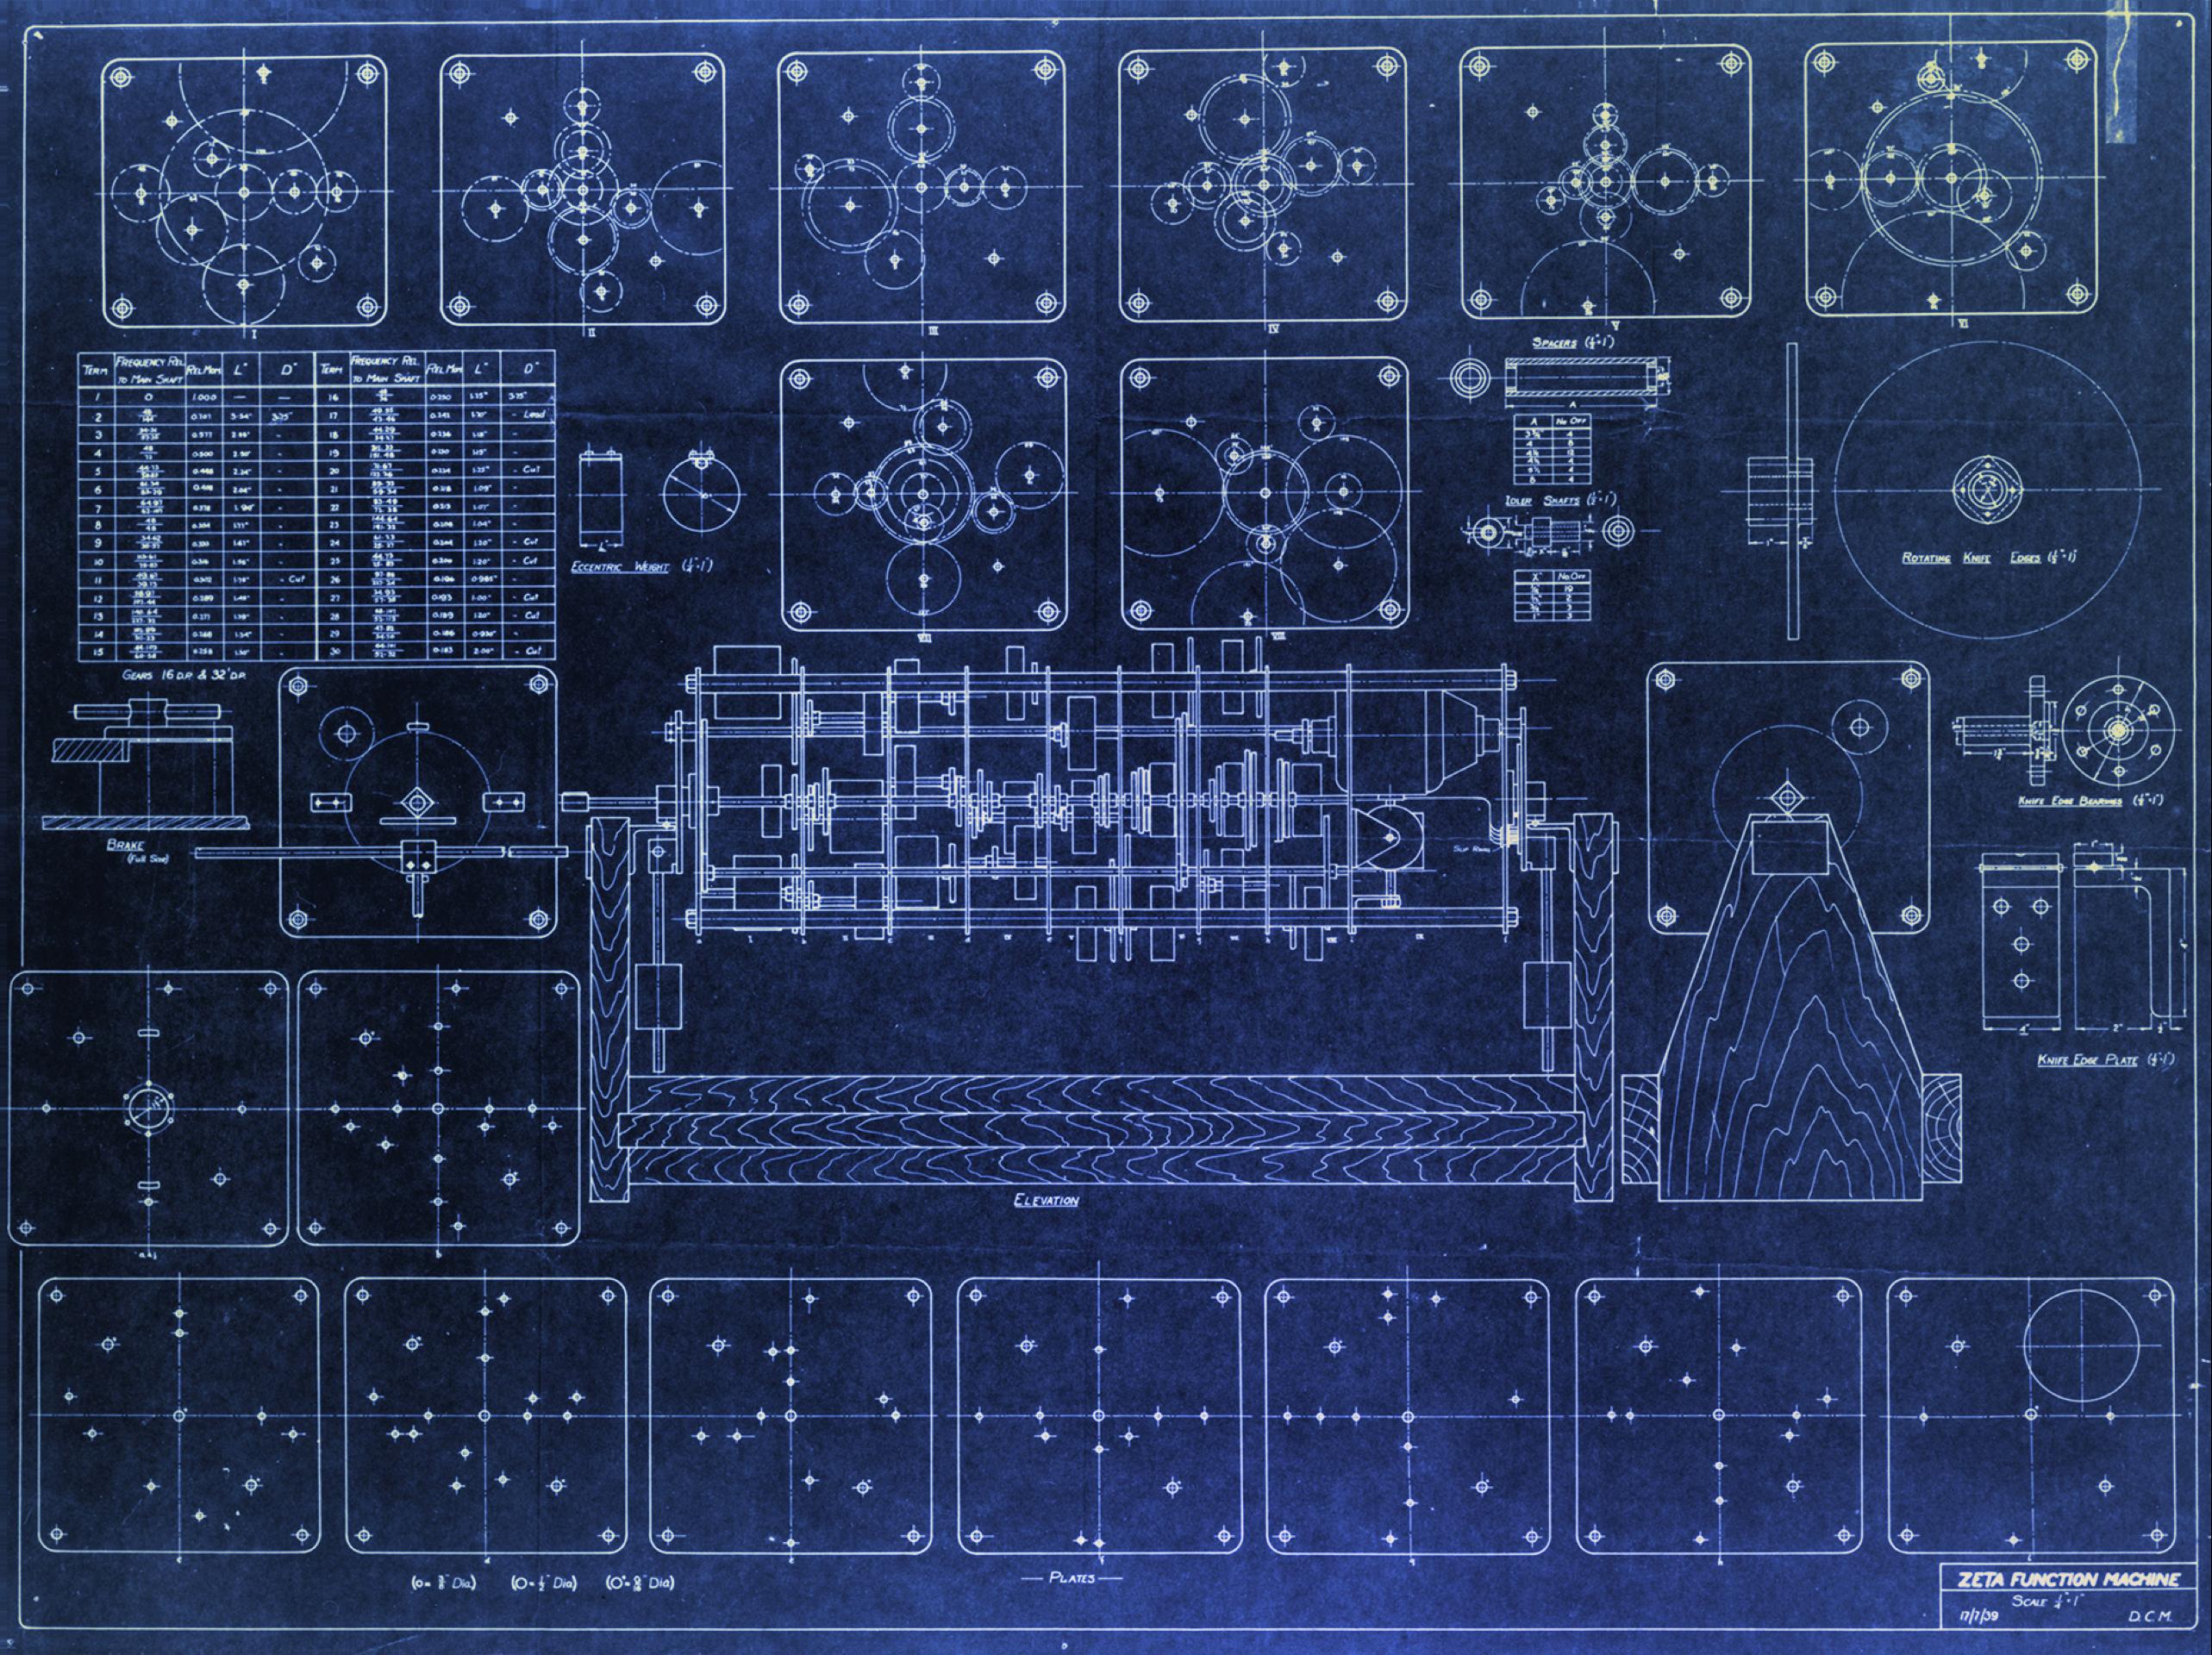 Turing's Zeta Function Machine